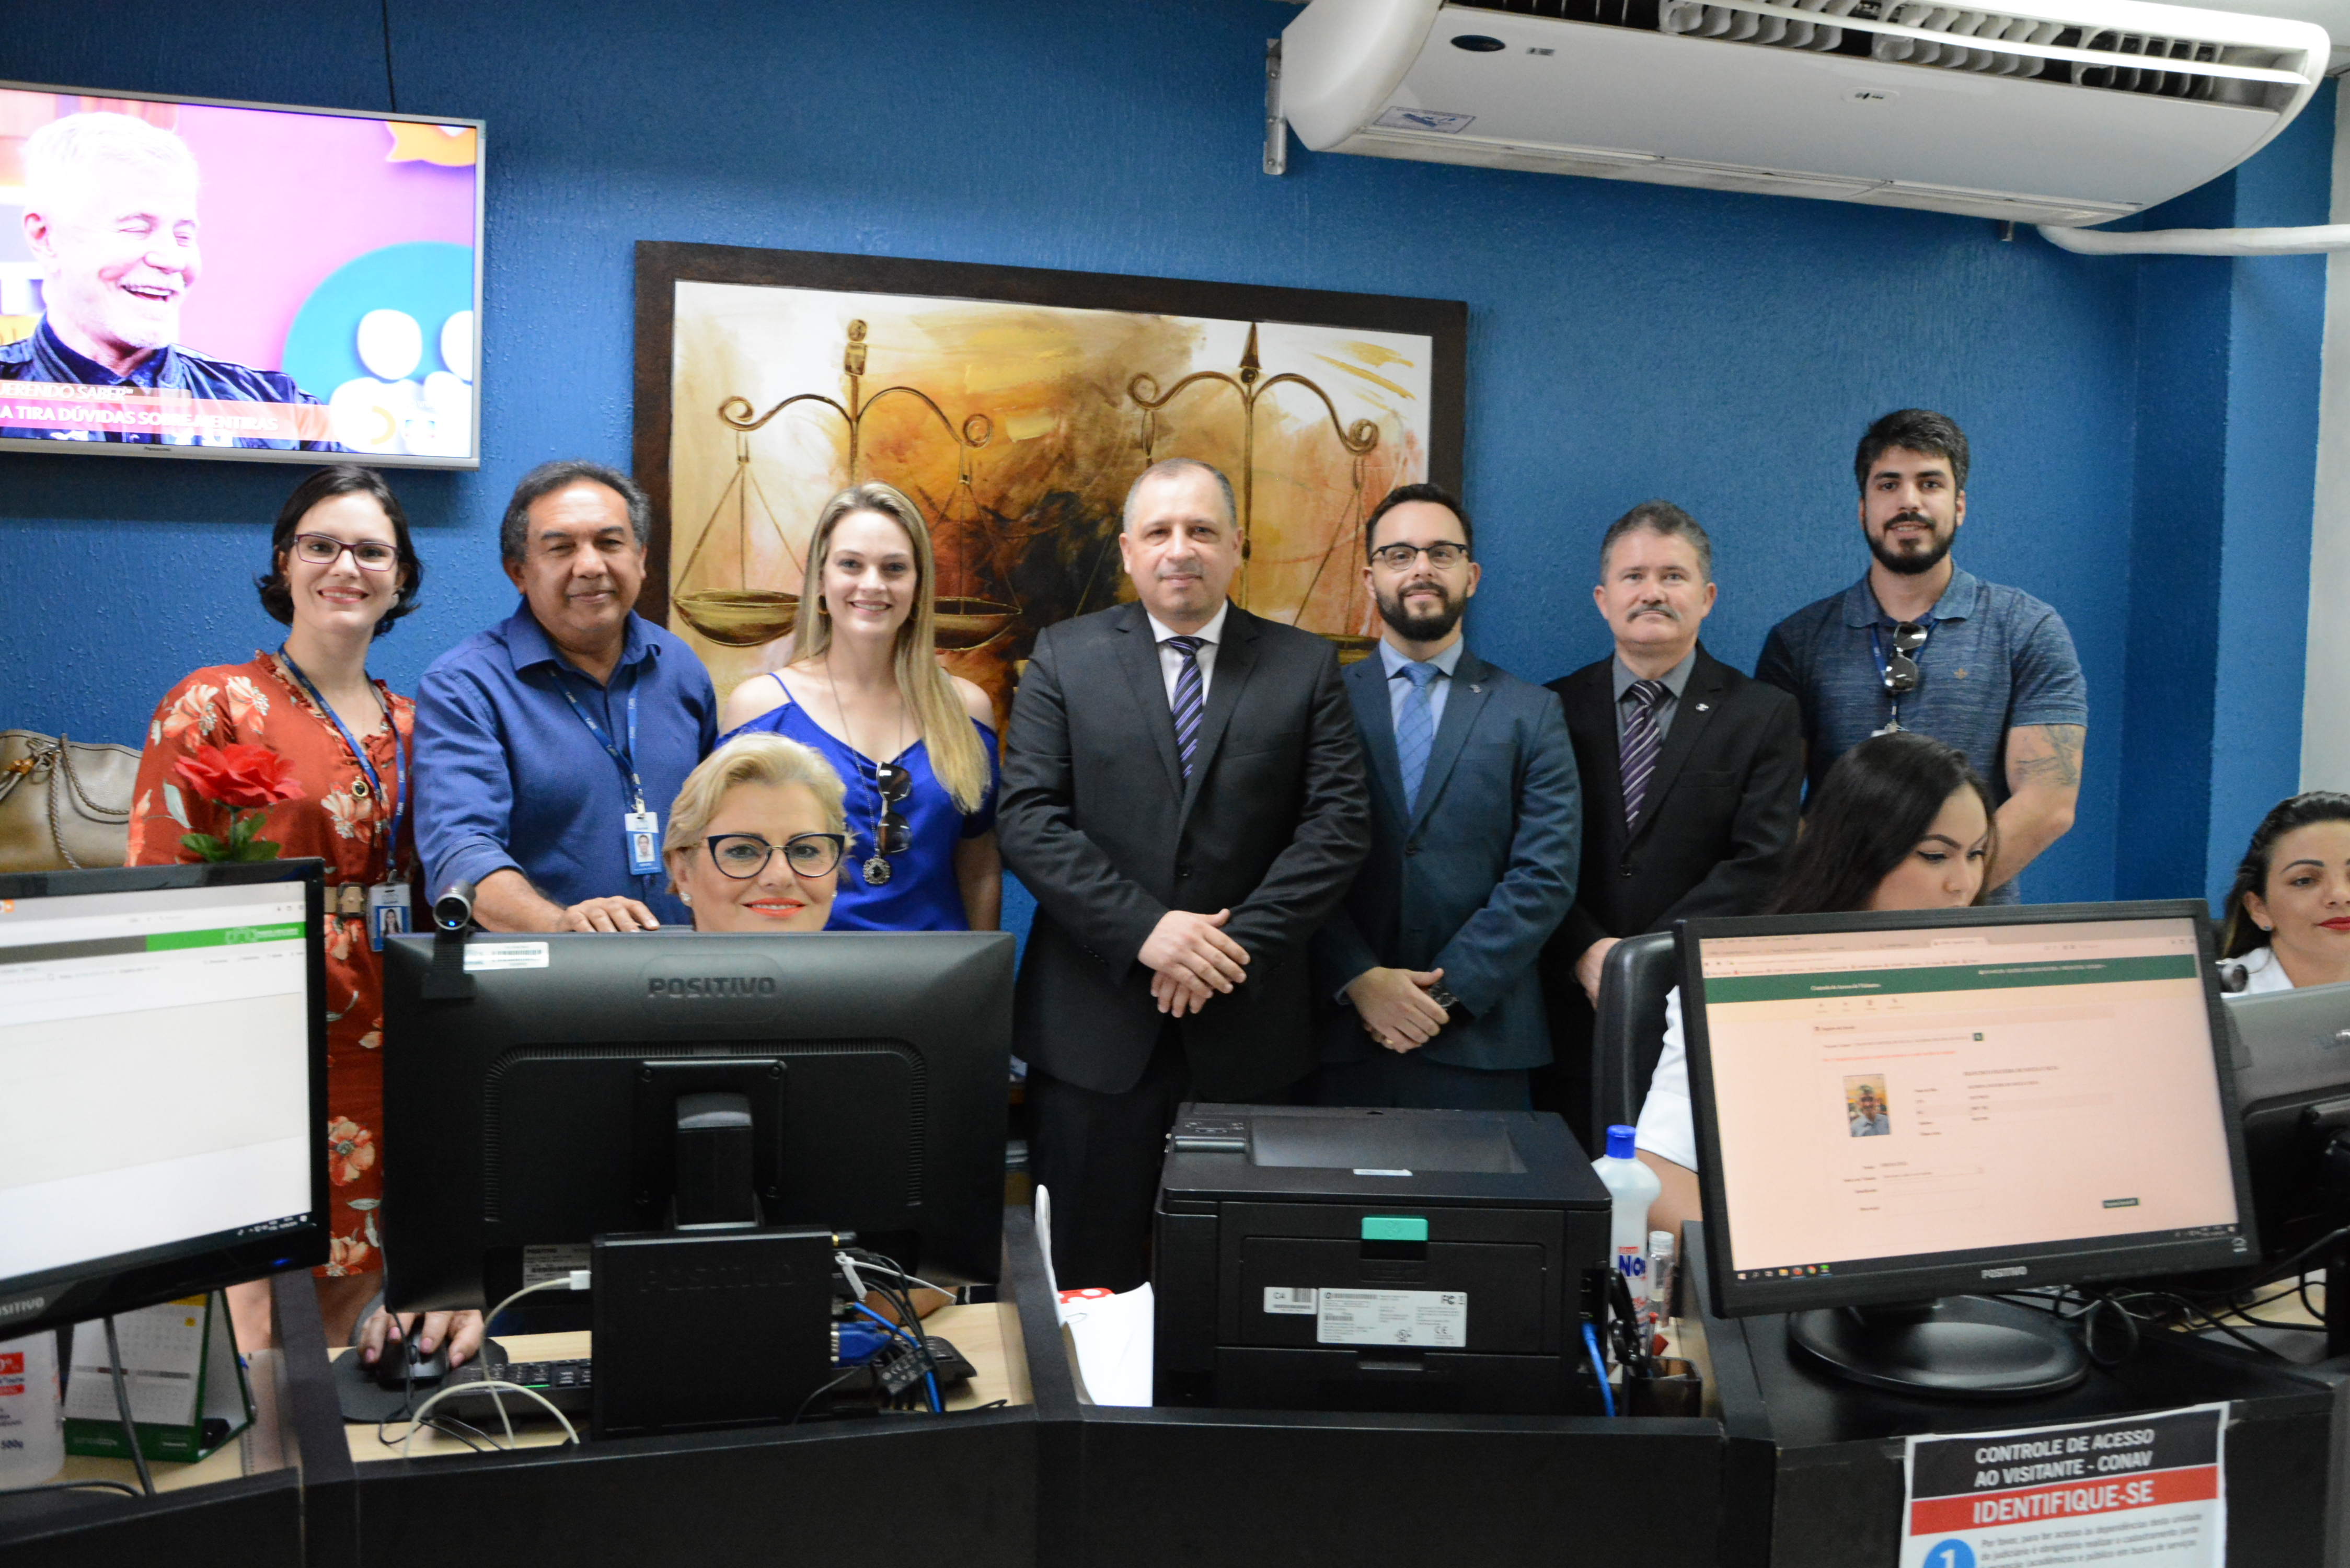 Equipe do Tribunal de Justiça de Roraima em foto durante a instalação do novo sistema de Controle de Acesso de Visitantes do TJRR